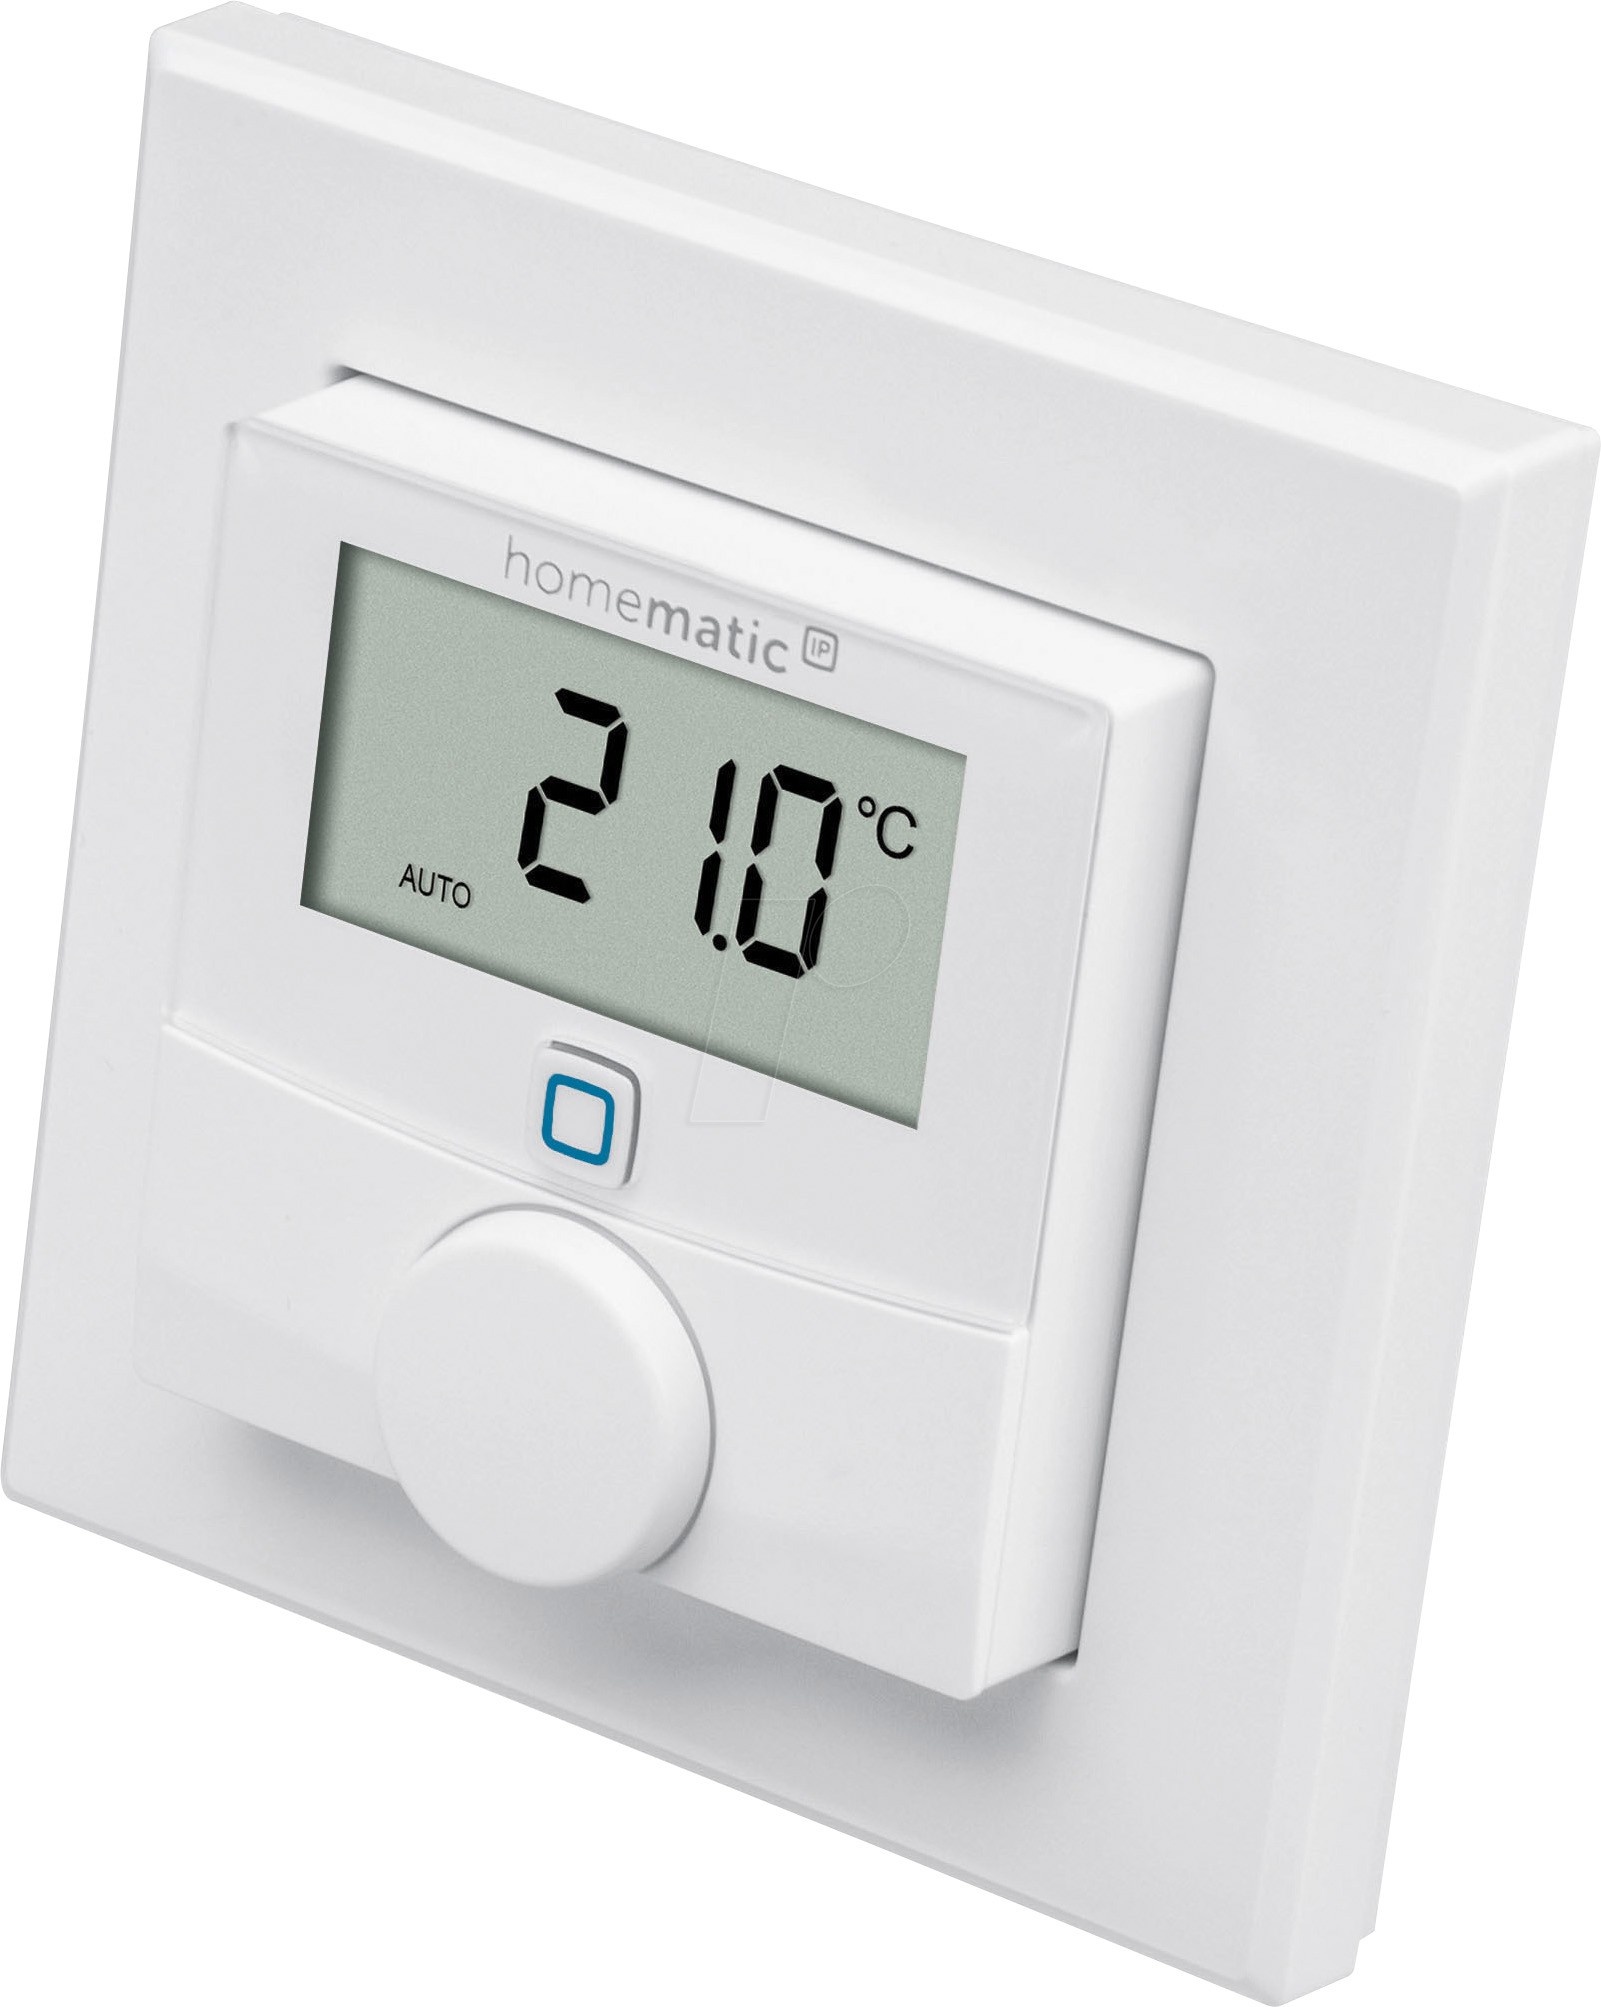 Homematic IP Smart Home Wandthermostat mit Luftfeuchtigkeitssensor, digitales Thermostat Heizkörper/Fußbodenheizung mit App, Alexa, Google Assistant, Temperaturmessung, Energie sparen, 156669A0, Weiß